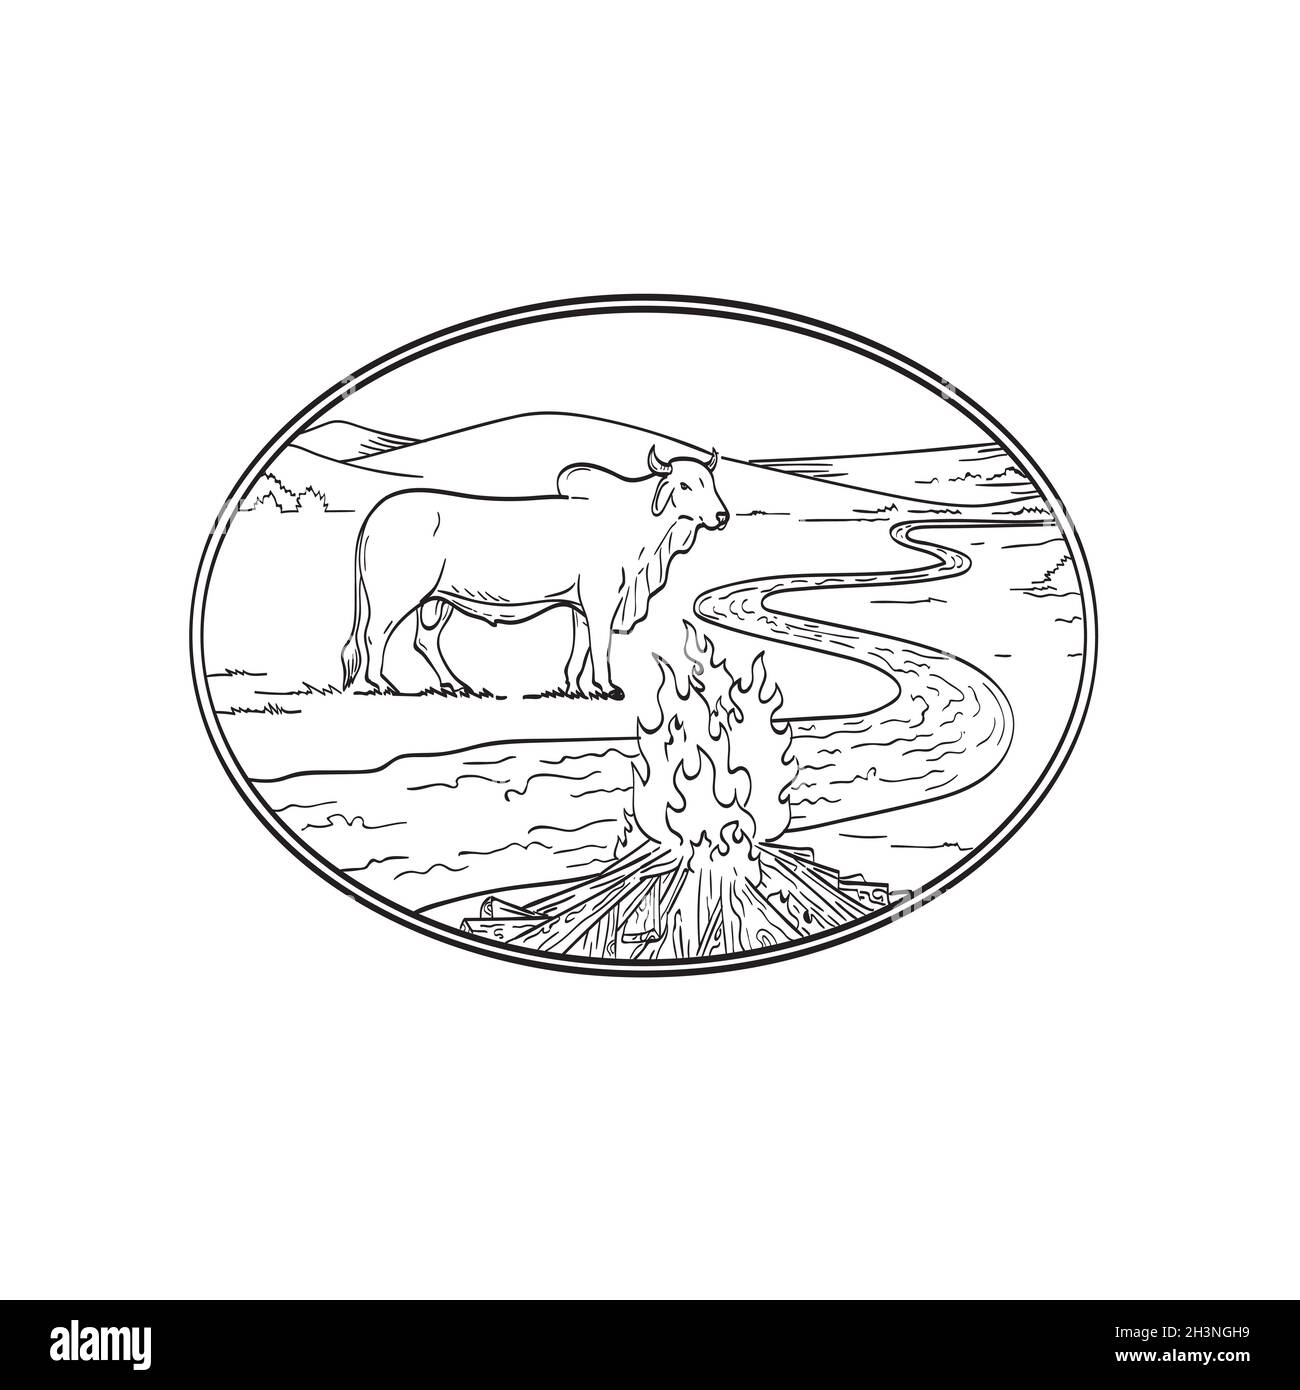 Brahman Bull in piedi con Winding River o Creek Mountain Range e Campfire Line Art disegno tatuaggio stile nero e bianco Foto Stock